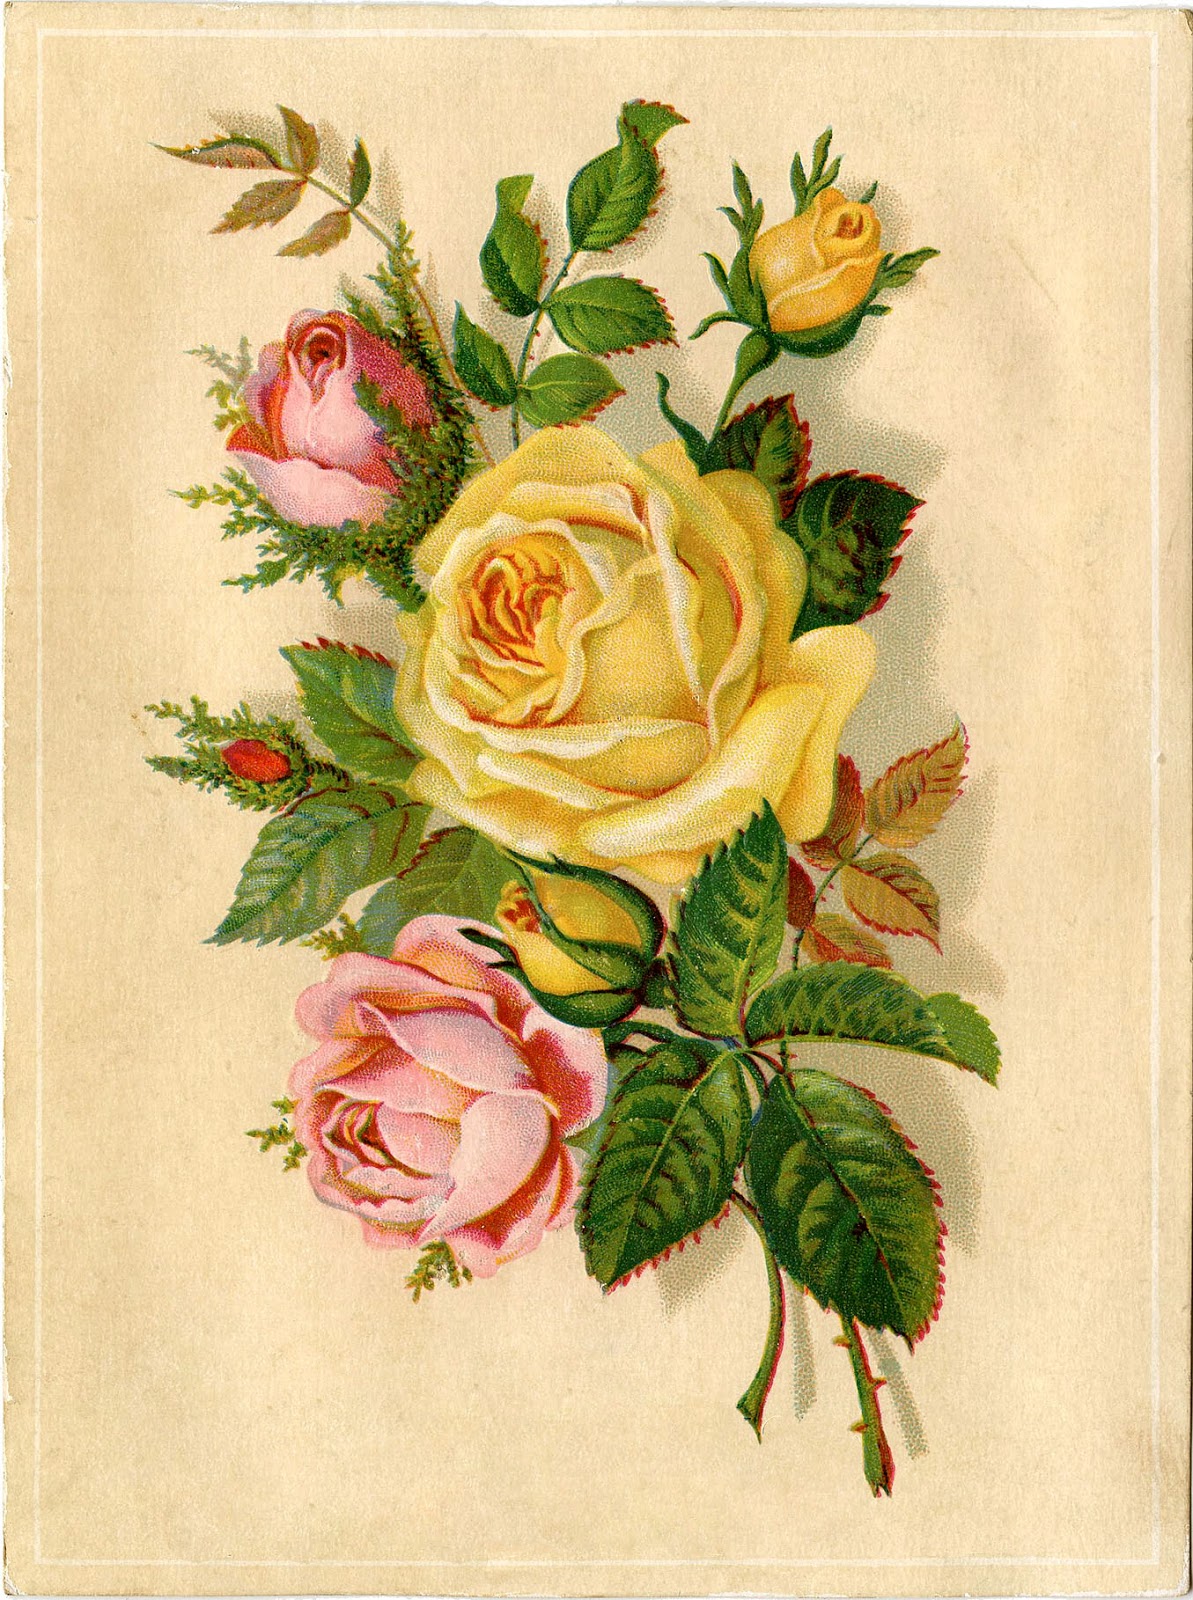 Vintage Roses Images 47